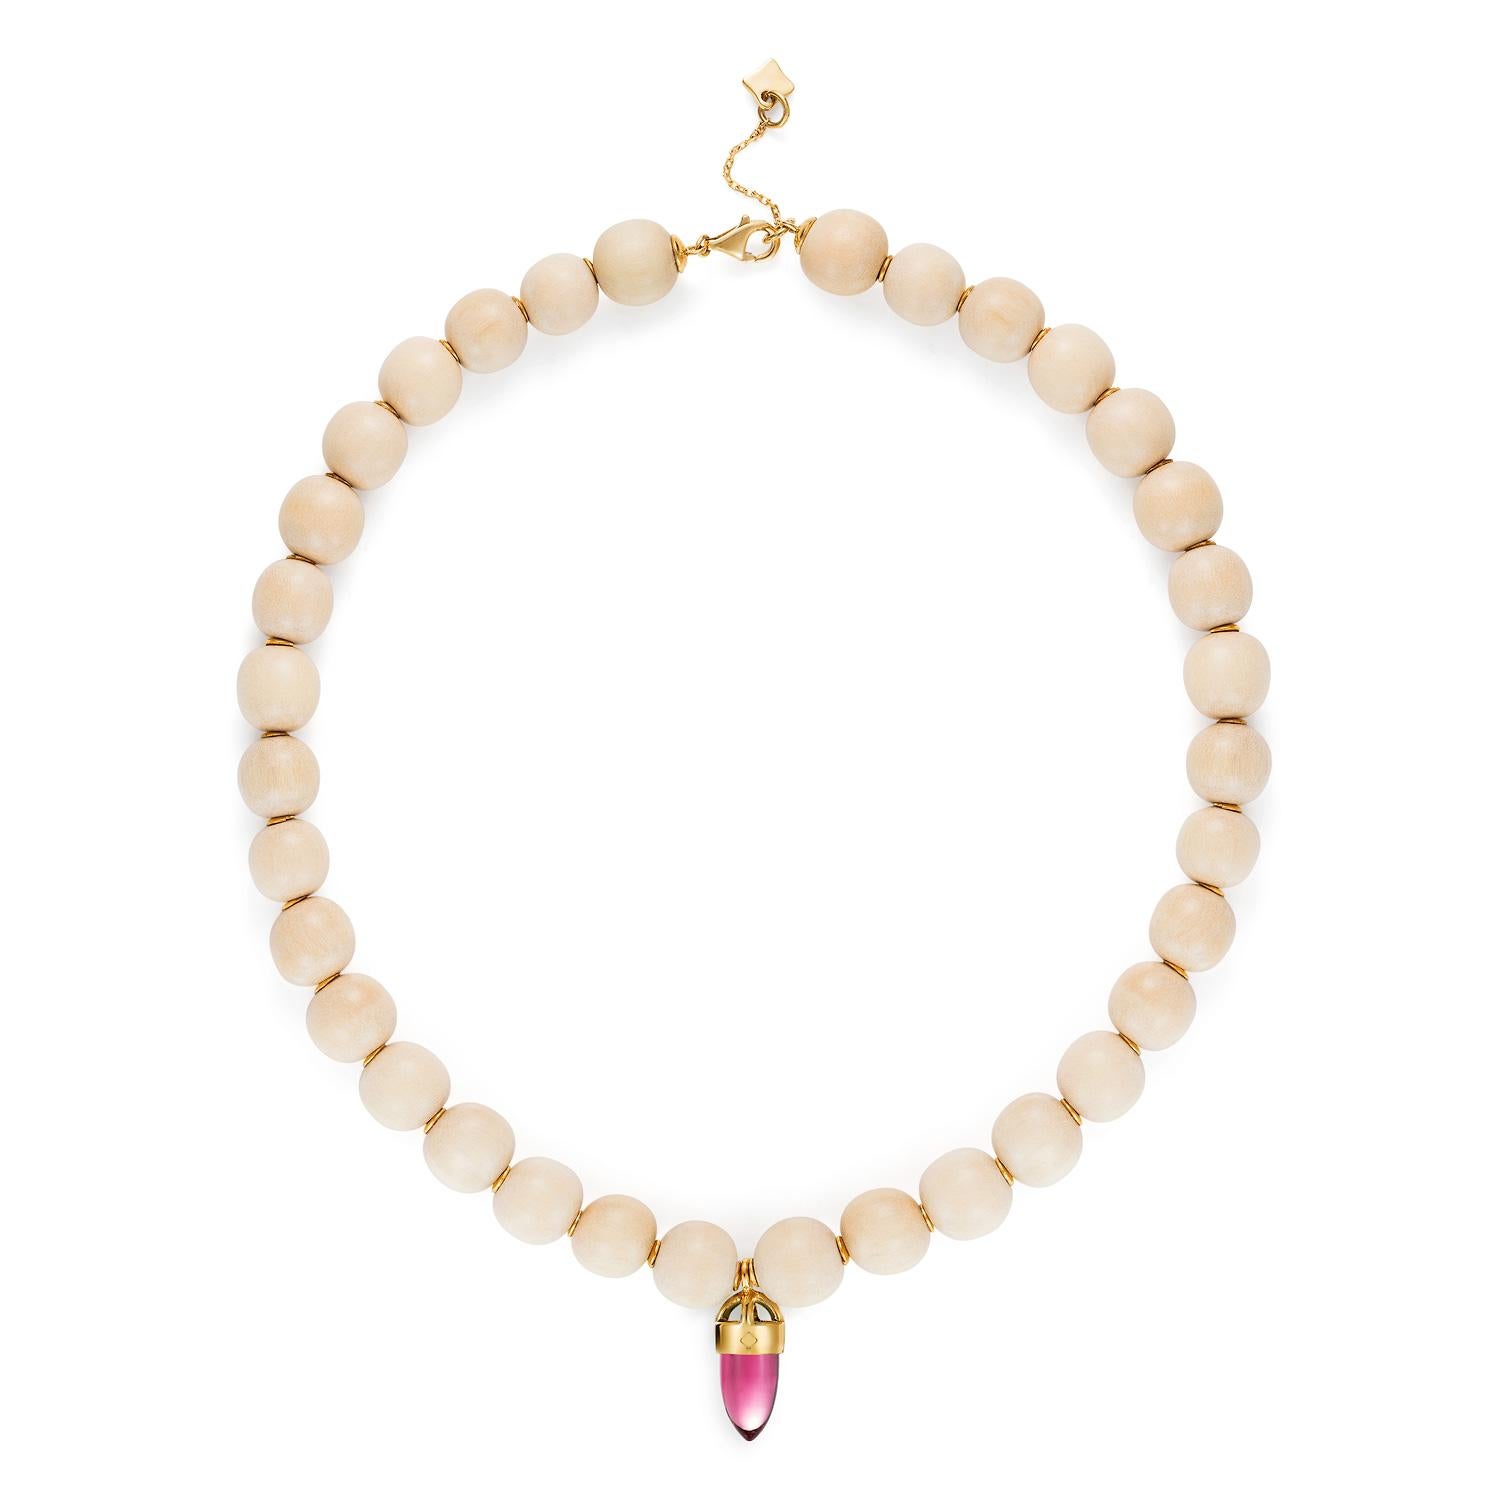 Neu in der Maviada-Kollektion sind unsere modernen und sehr stilvollen Holzketten mit 18-karätigen Goldscheiben, die zwischen den 12-mm-Perlen eingefügt sind und dieser Kette einen verspielten und doch luxuriösen Look verleihen. Jede Halskette ist